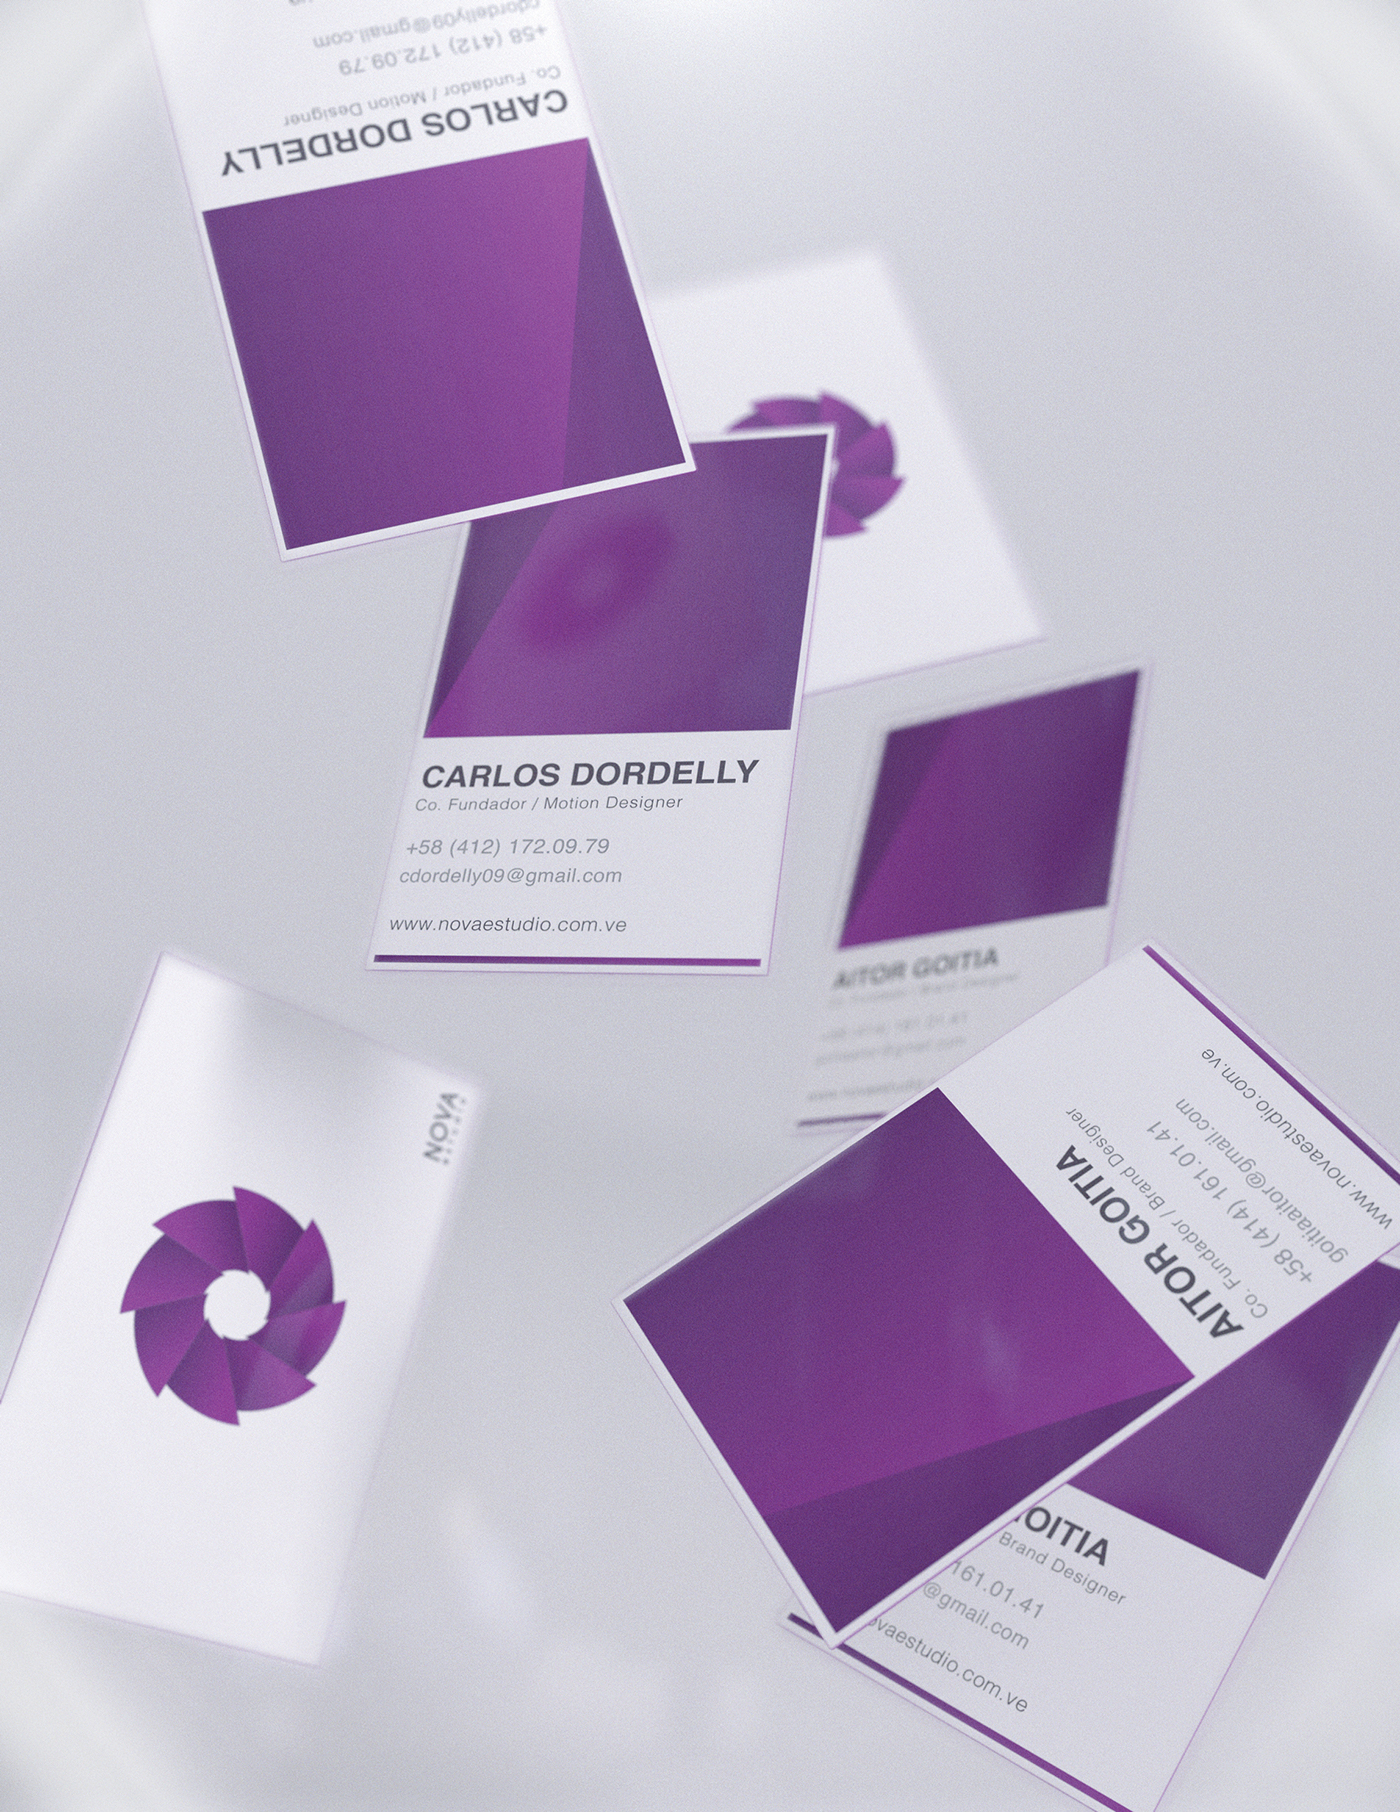 brand Nova estudio studio design logo Stationery frames purple big bang cards venezuela caracas book editorial